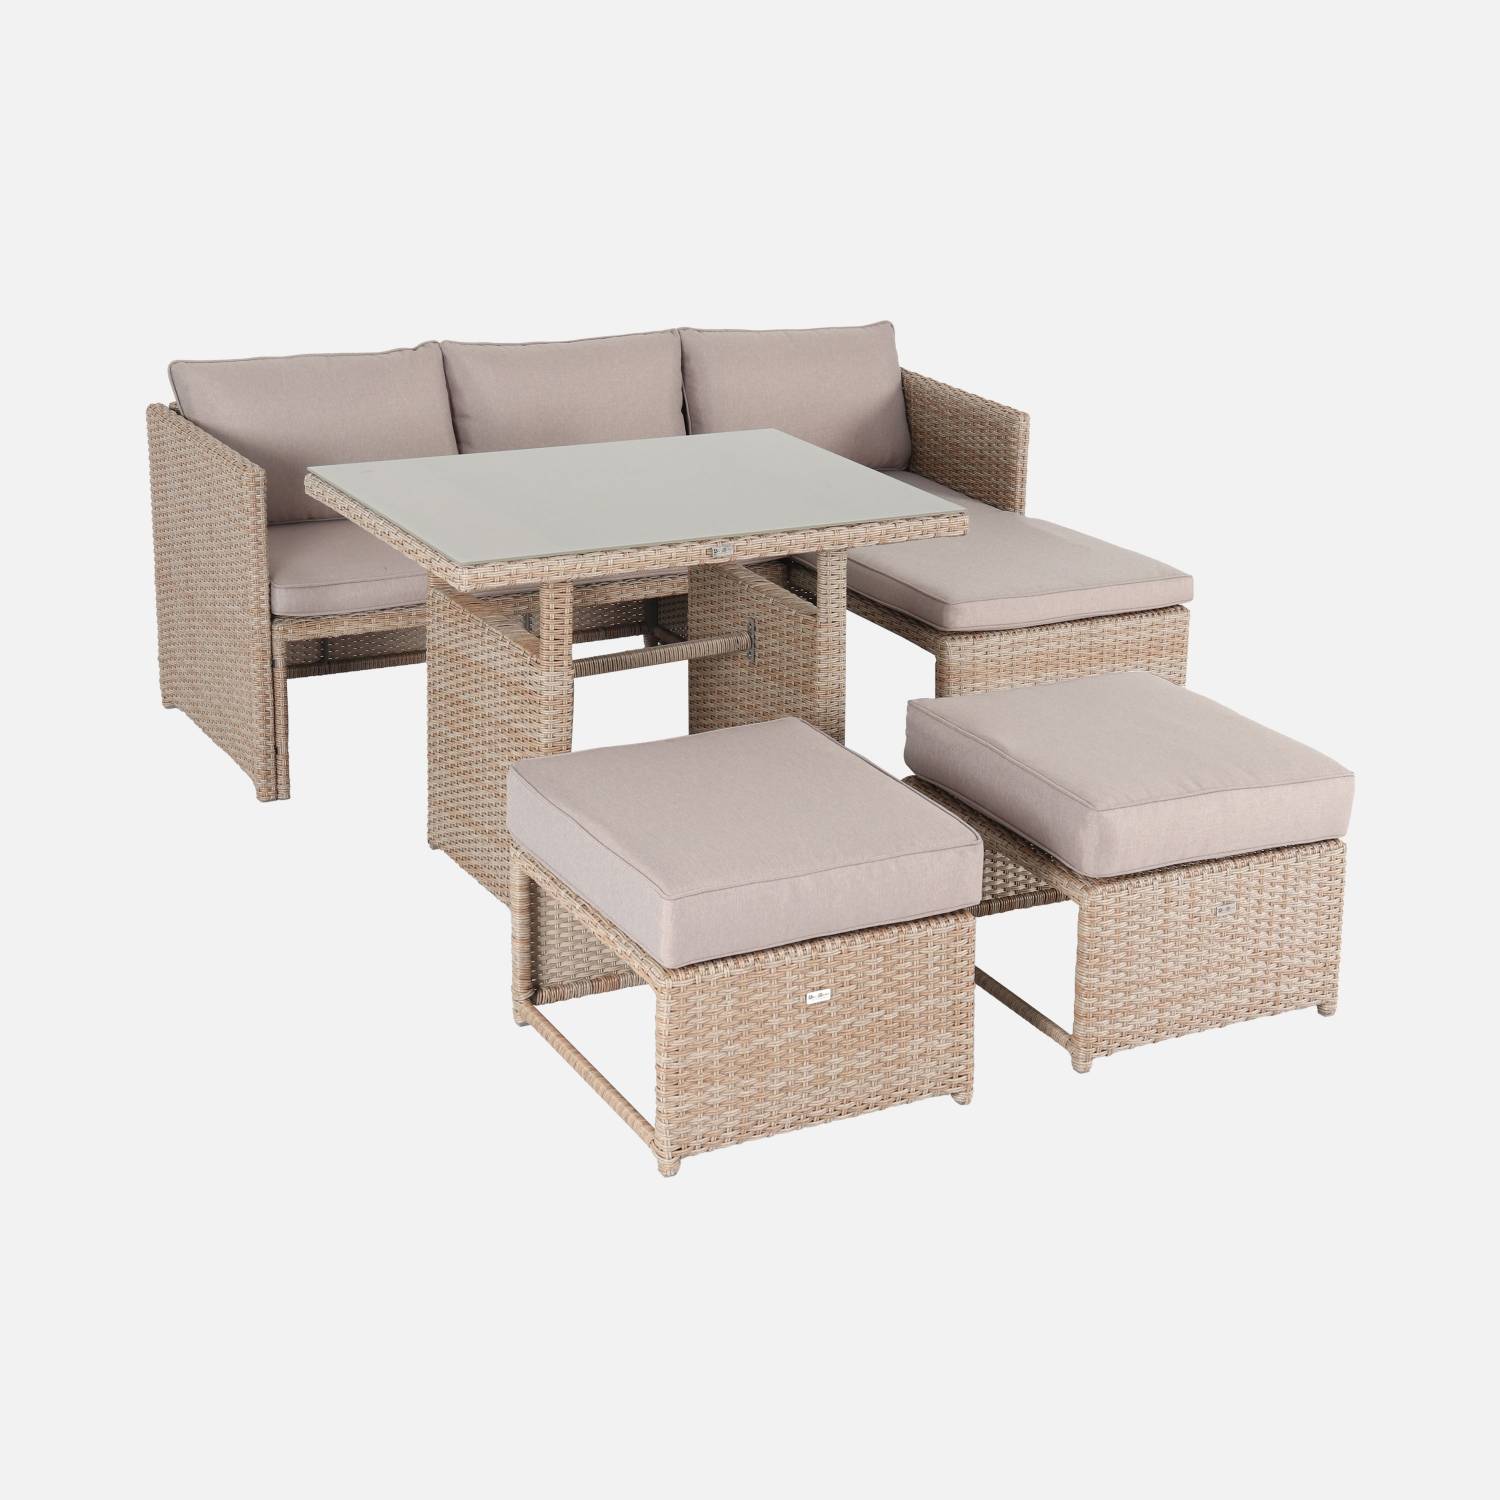 Conjunto muebles de jardín 6 plazas - Reggiano - Natural / beige, sofá con mesa de jardín, chaise longue, 2 pufs incorporados | sweeek